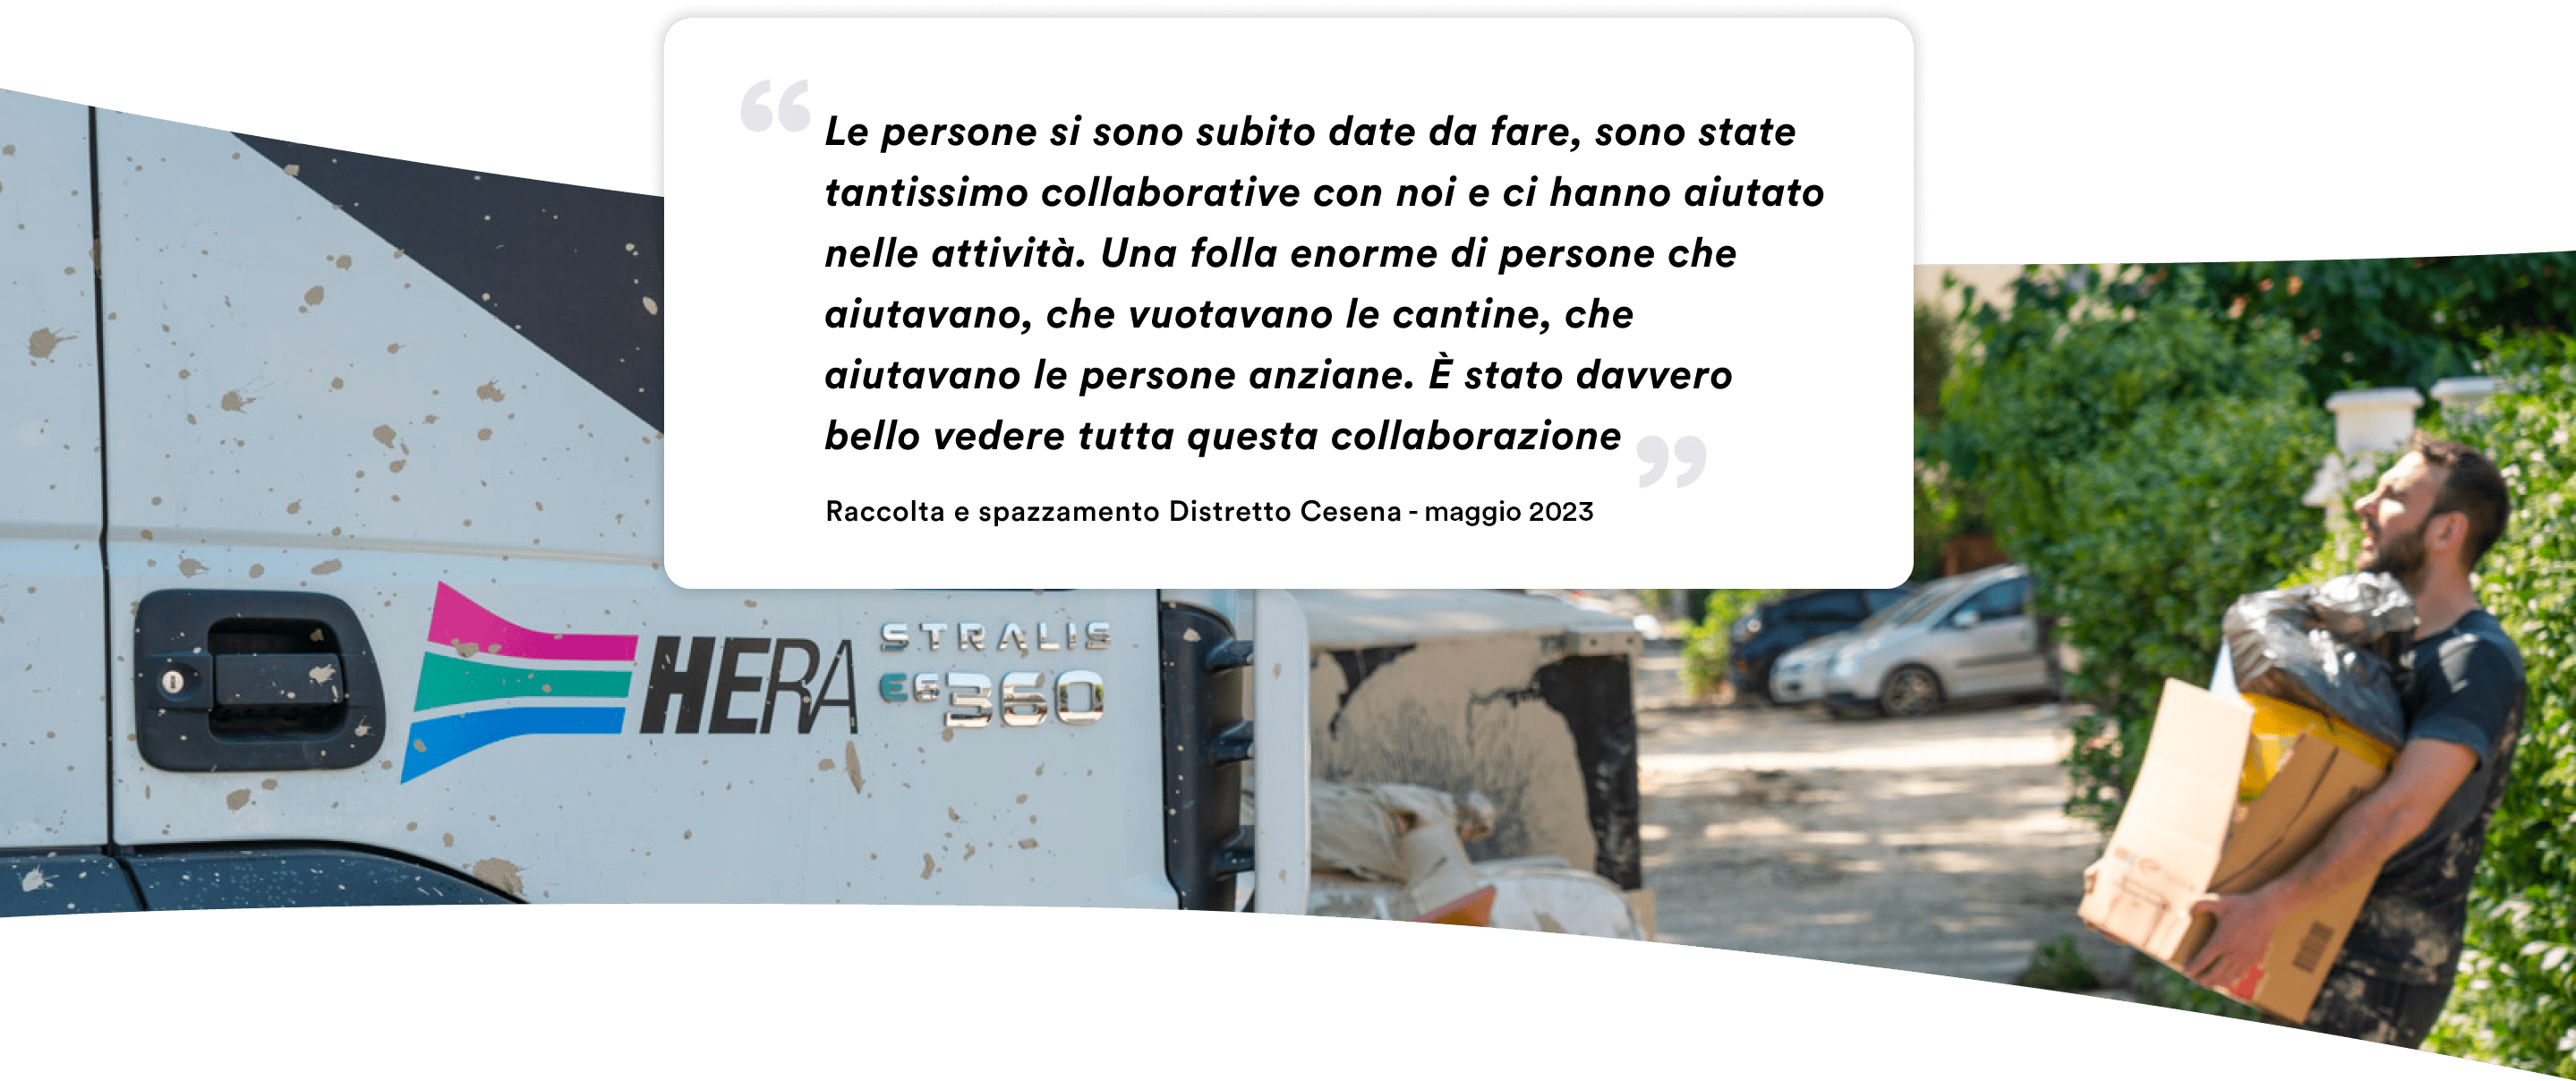 raccolta e spazzamento Distretto Cesena Maggio 2023 dichiara: 